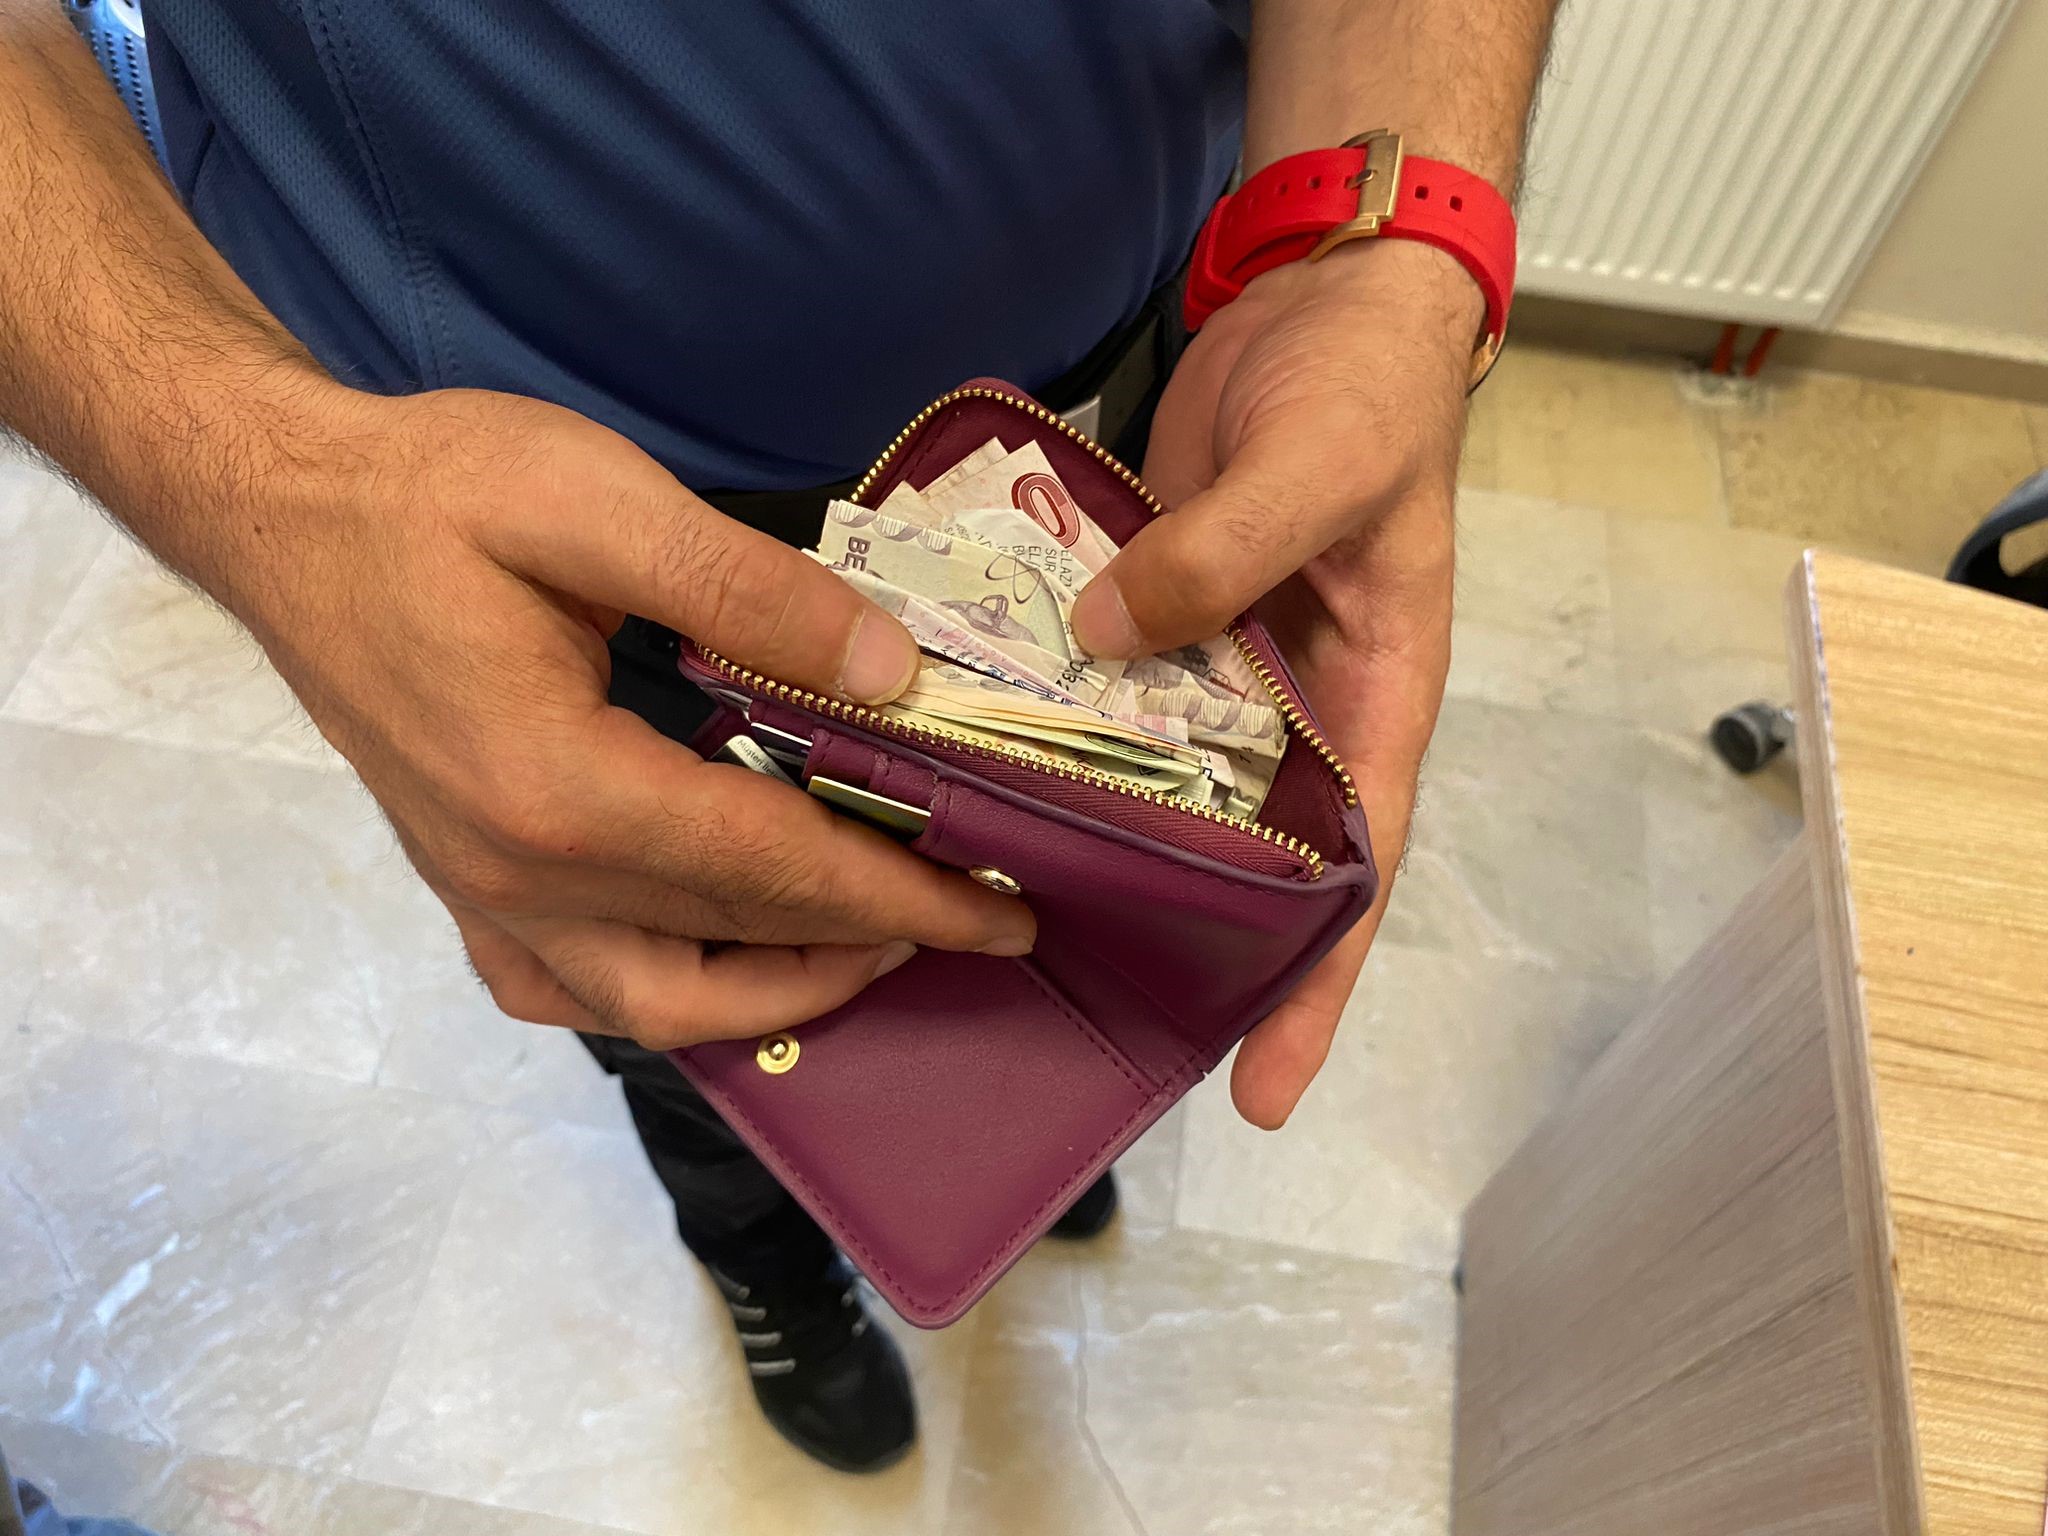 Temizlik personeli para dolu cüzdanı polise teslim etti